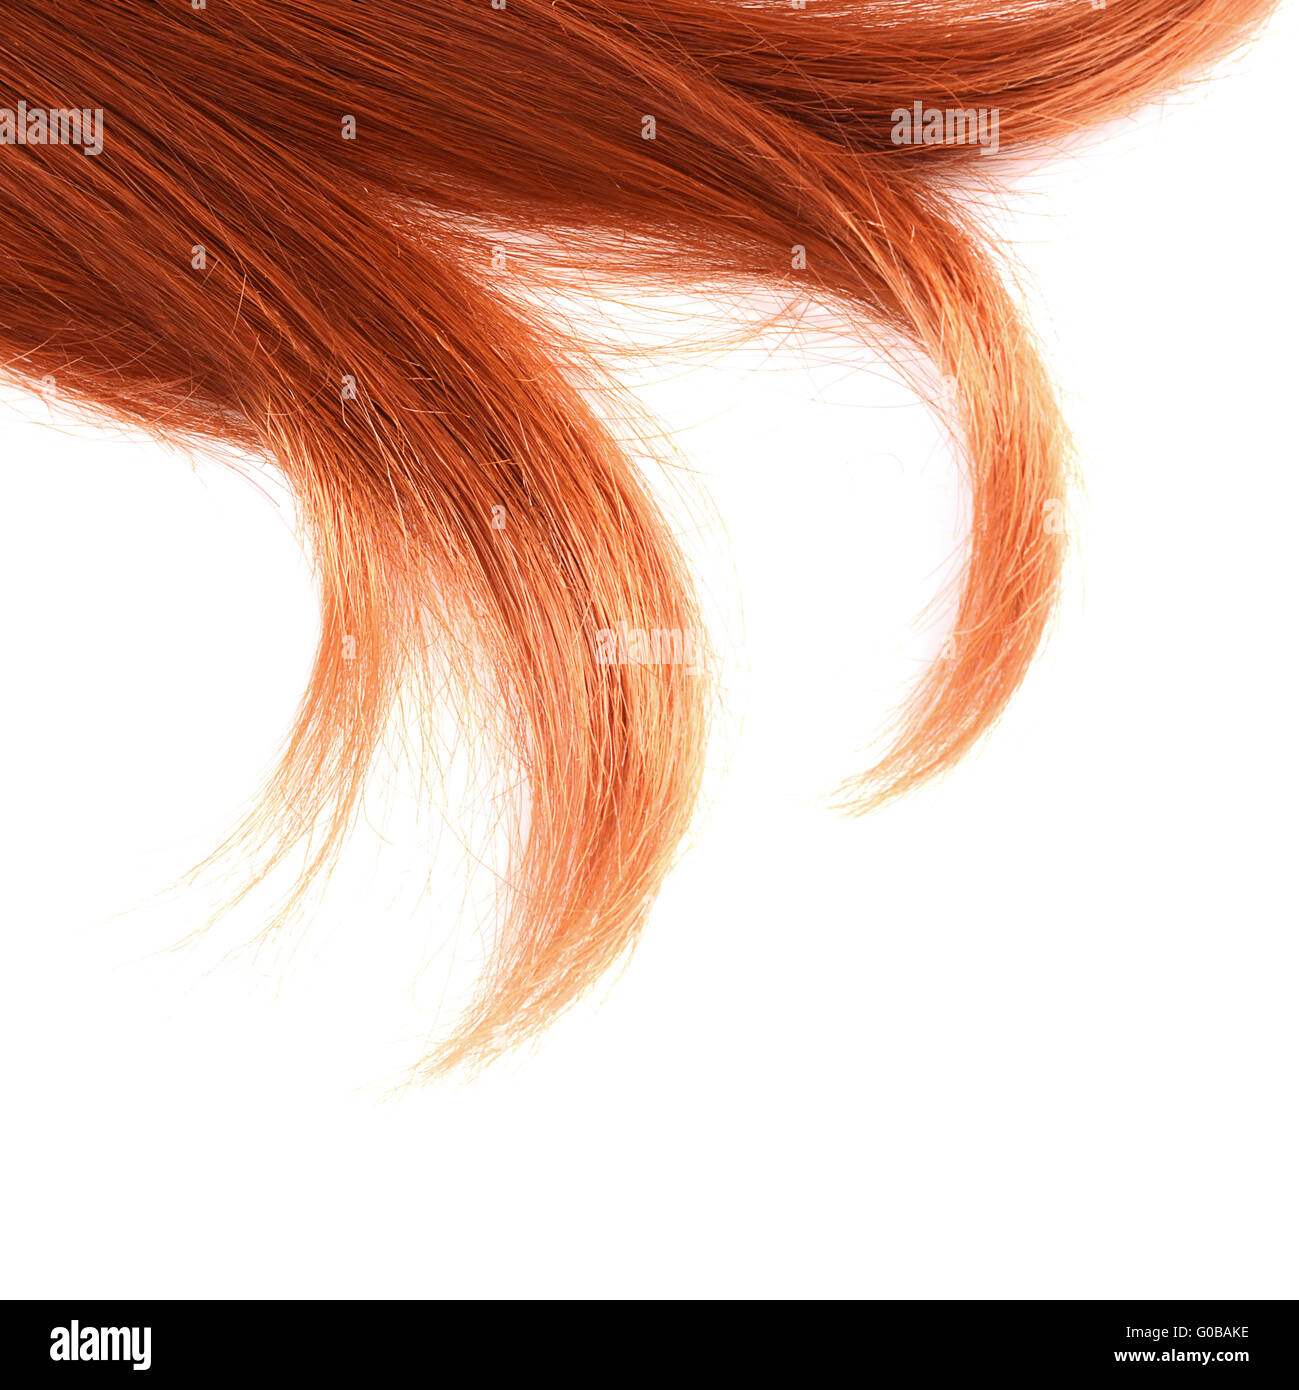 Schöne rote Haare isoliert auf weißem Hintergrund Stockfoto